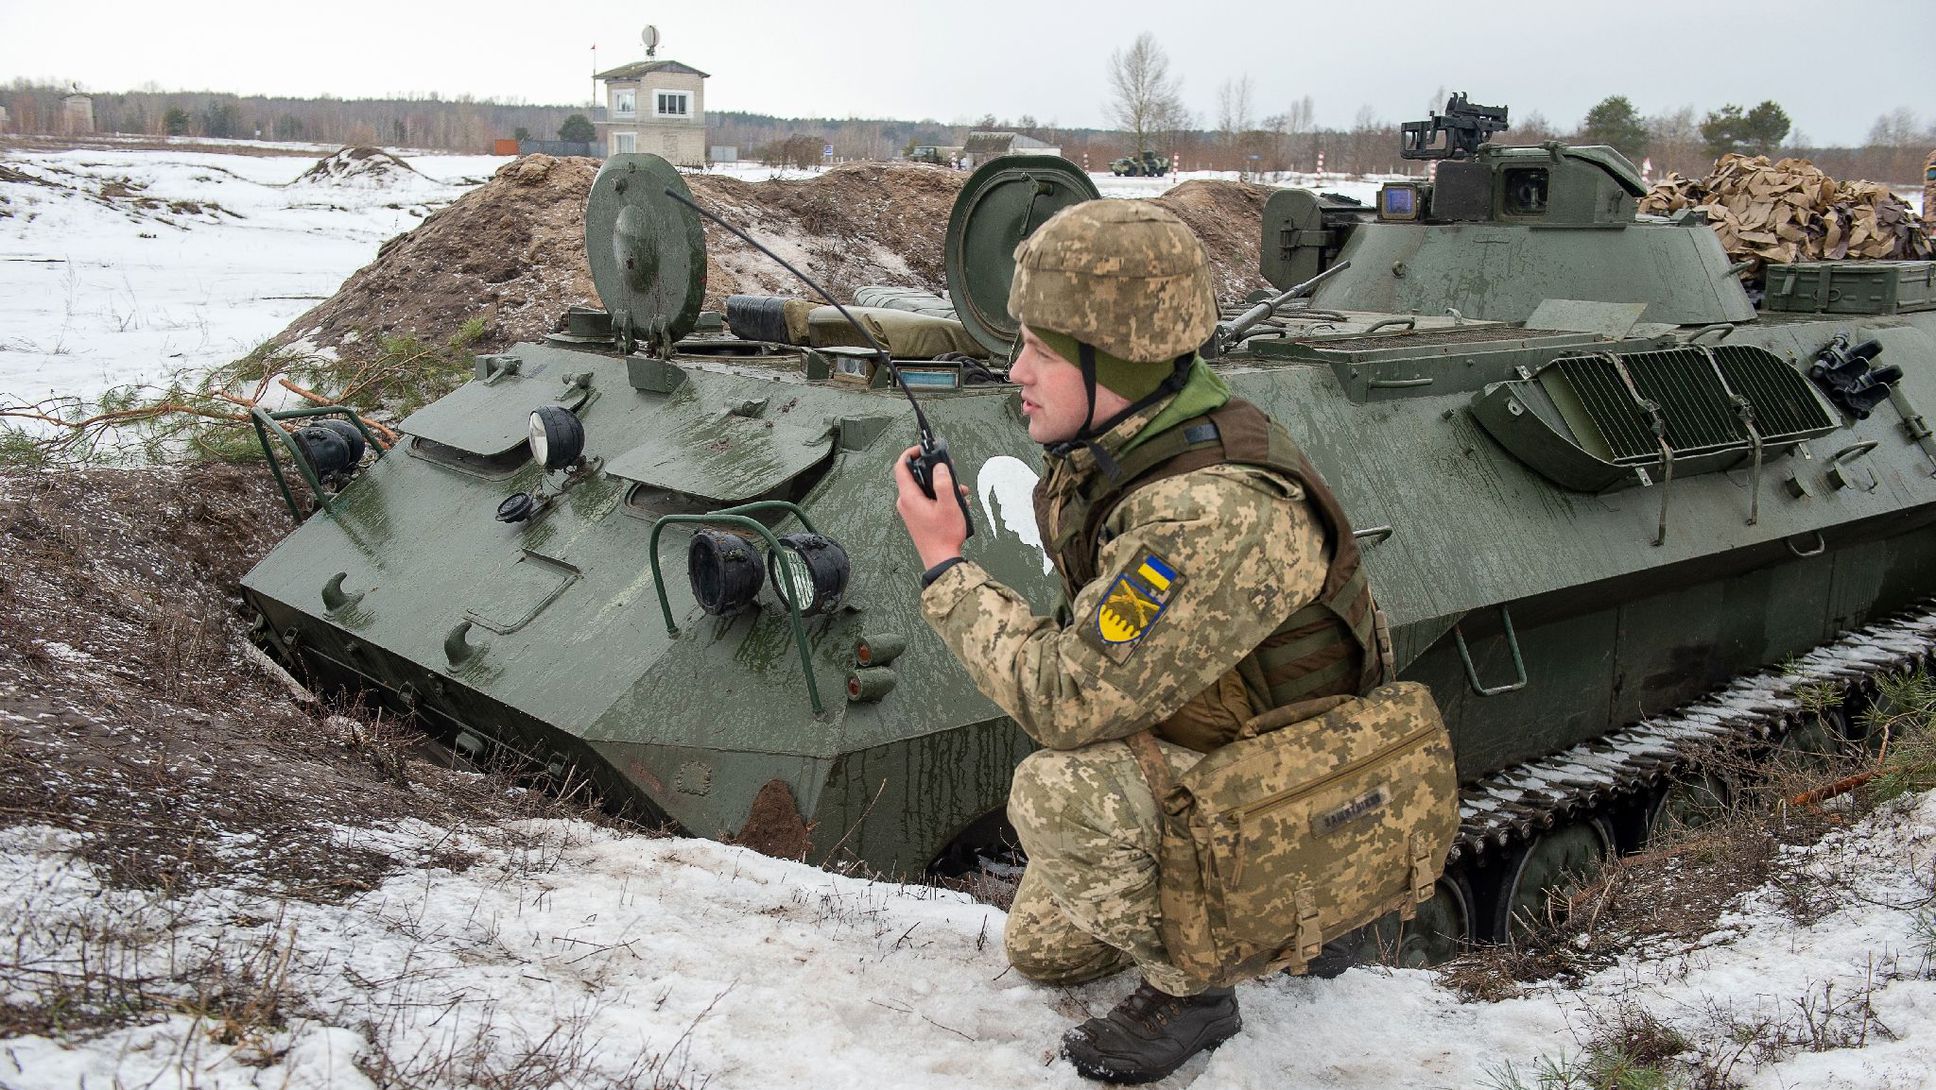 des-soldats-ukrainien-participent-a-des-exercices-militaires-dans-la-region-de-kharkiv-le-10-fevrier-2022-2_6341074.jpg